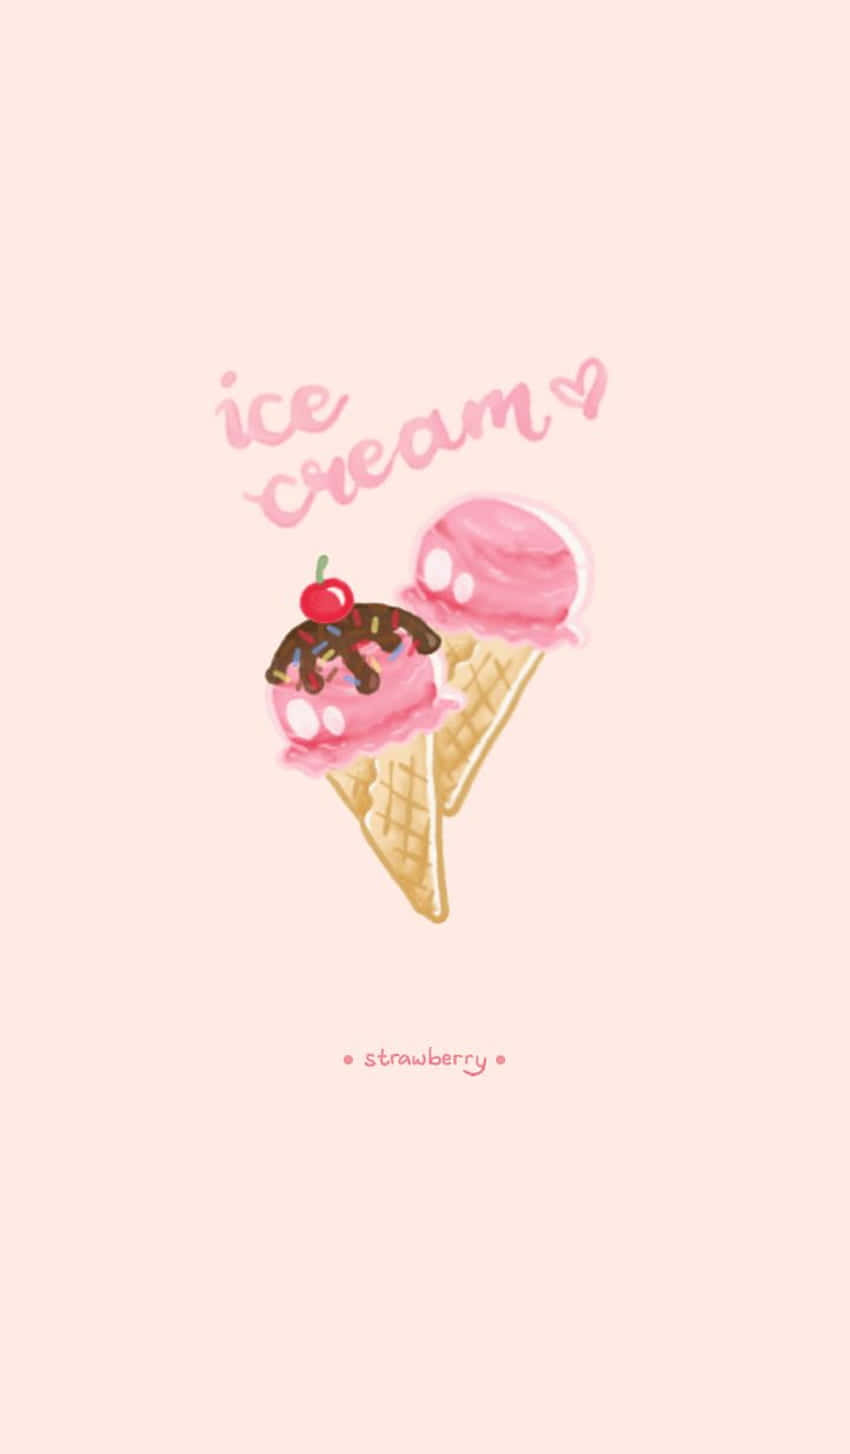 Strawberry Flavor Cute Ice Cream Wallpaper